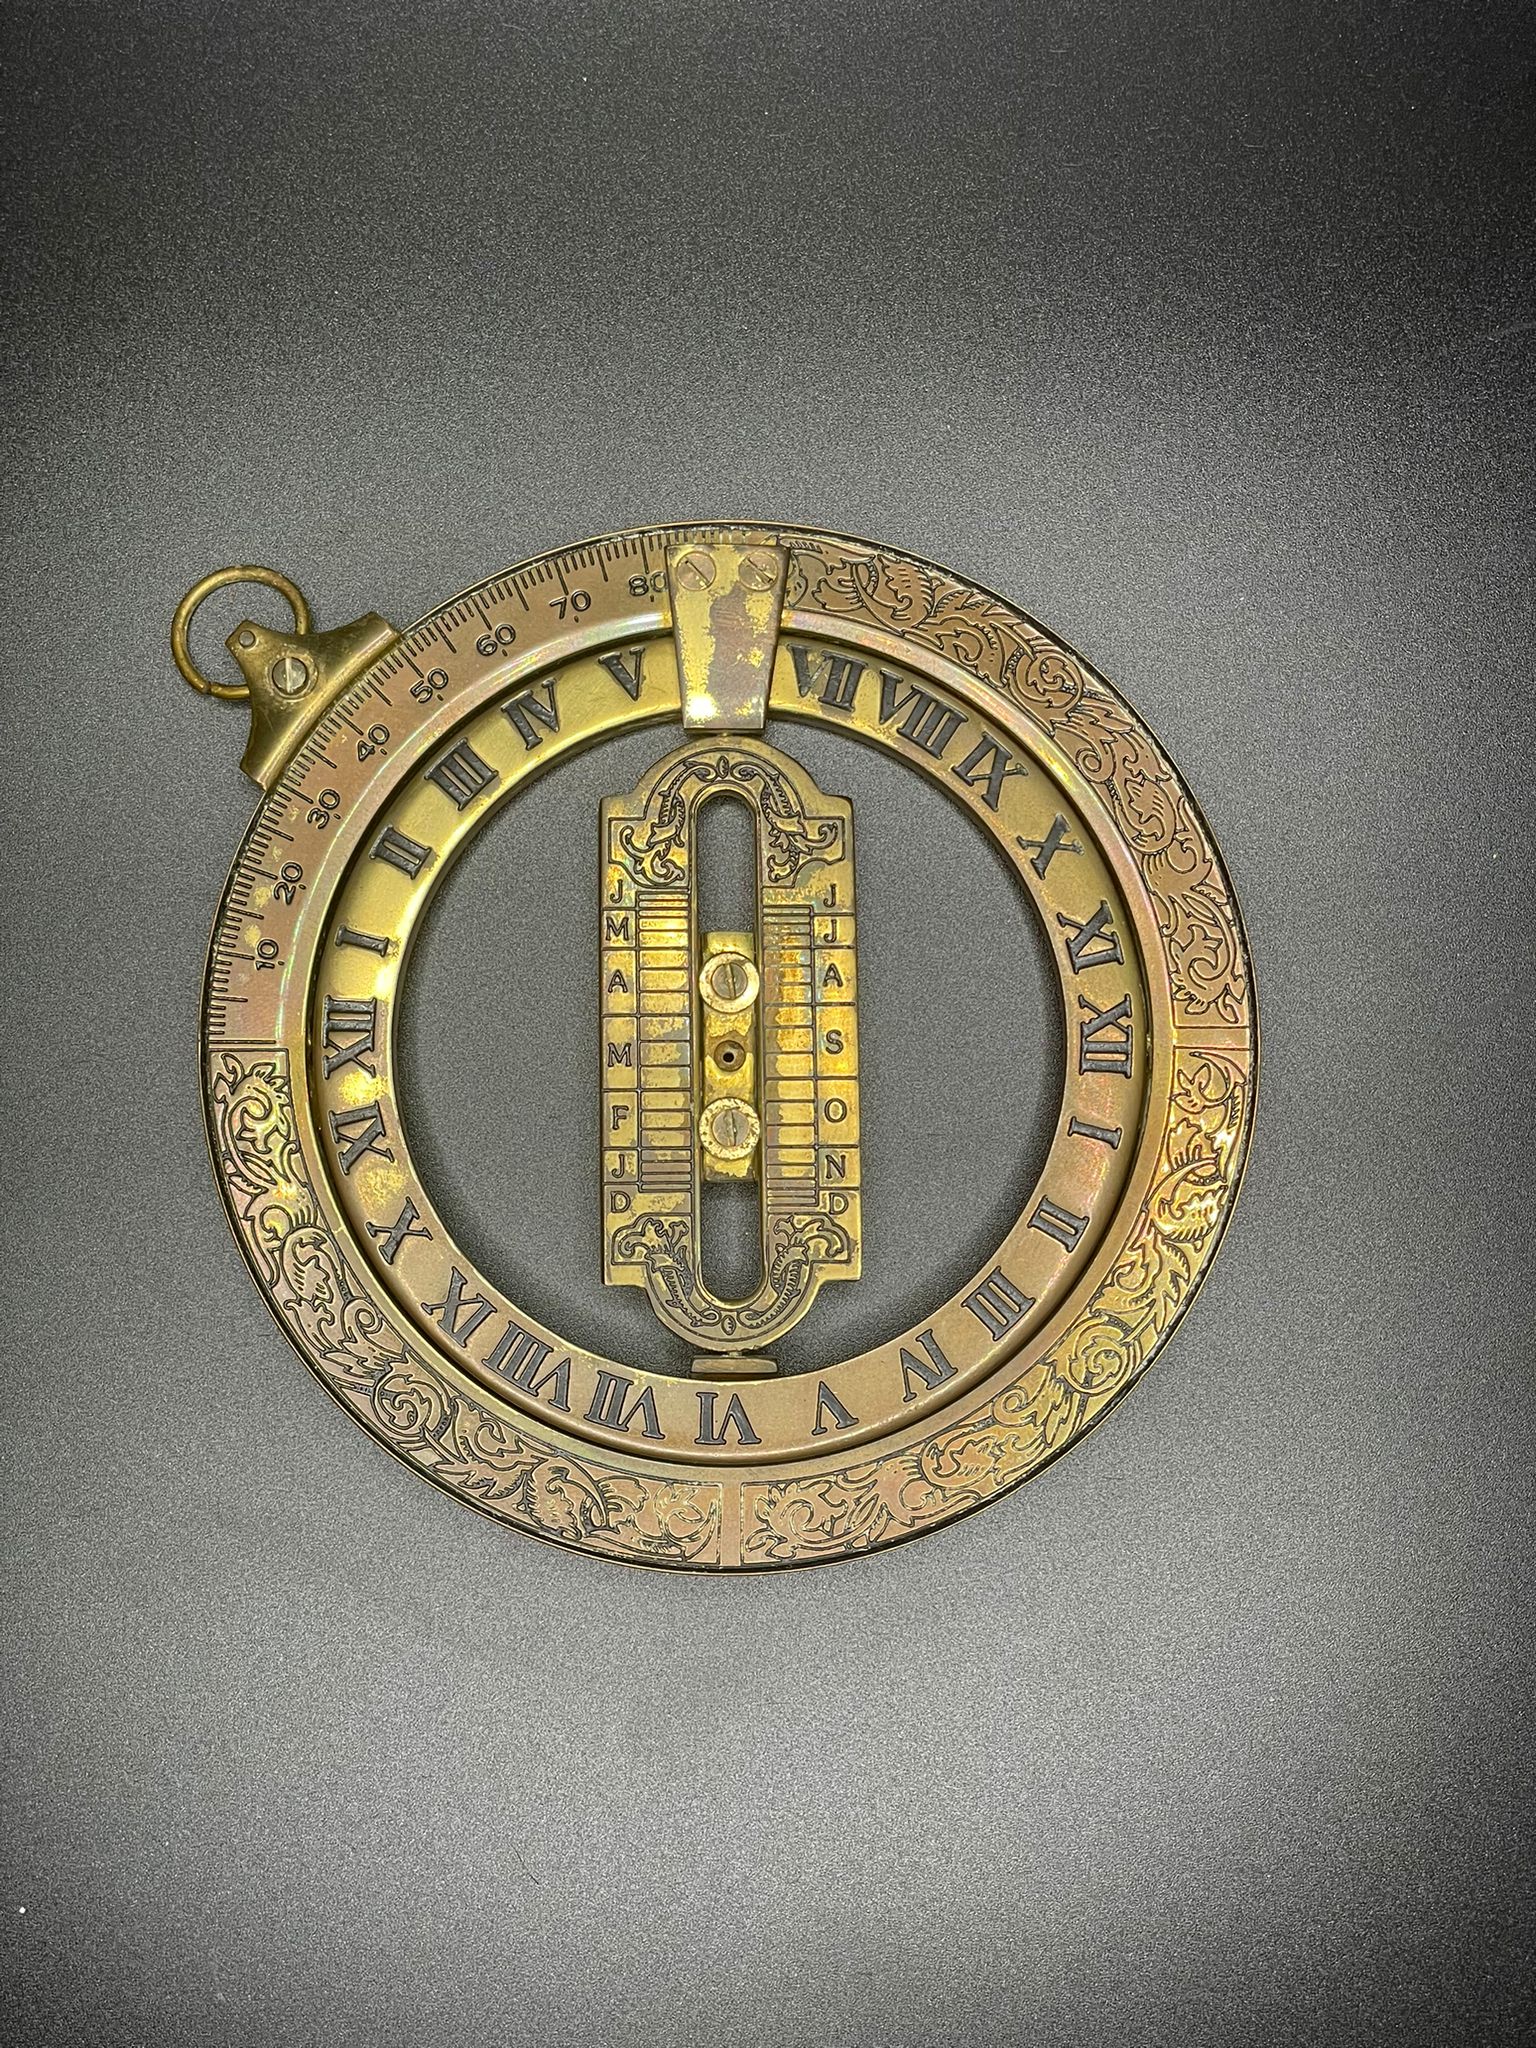 Antique Universal Equinoctial Ring Dial